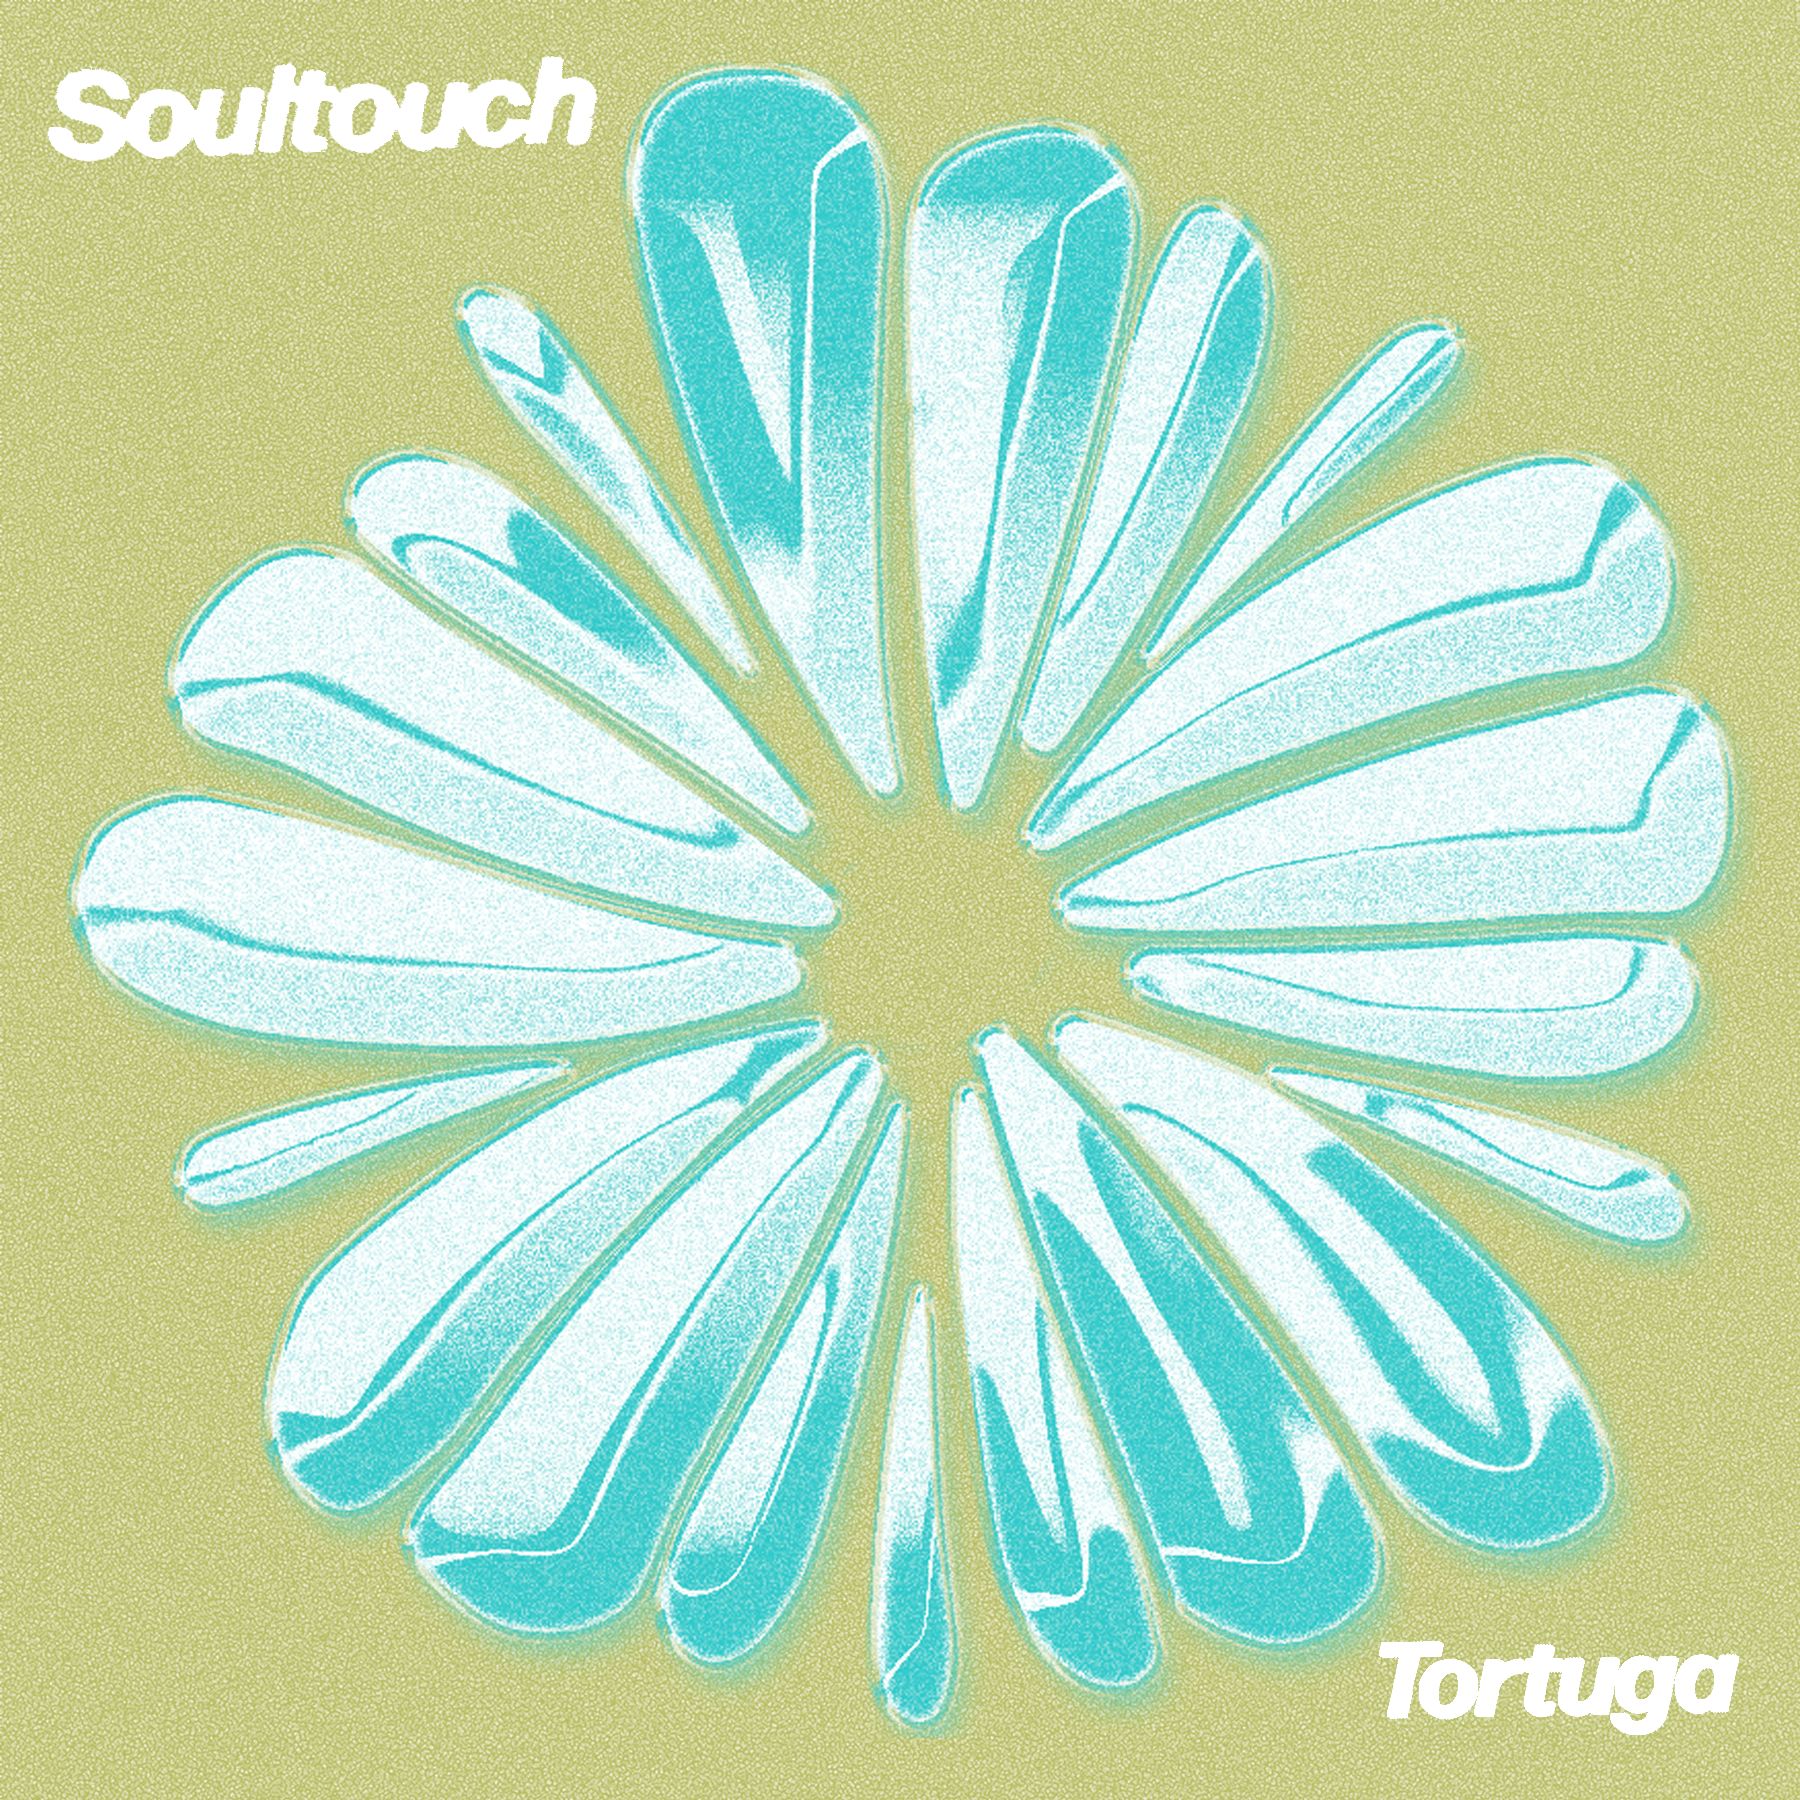 Κατεβάστε PREMIERE : Tortuga - Soultouch